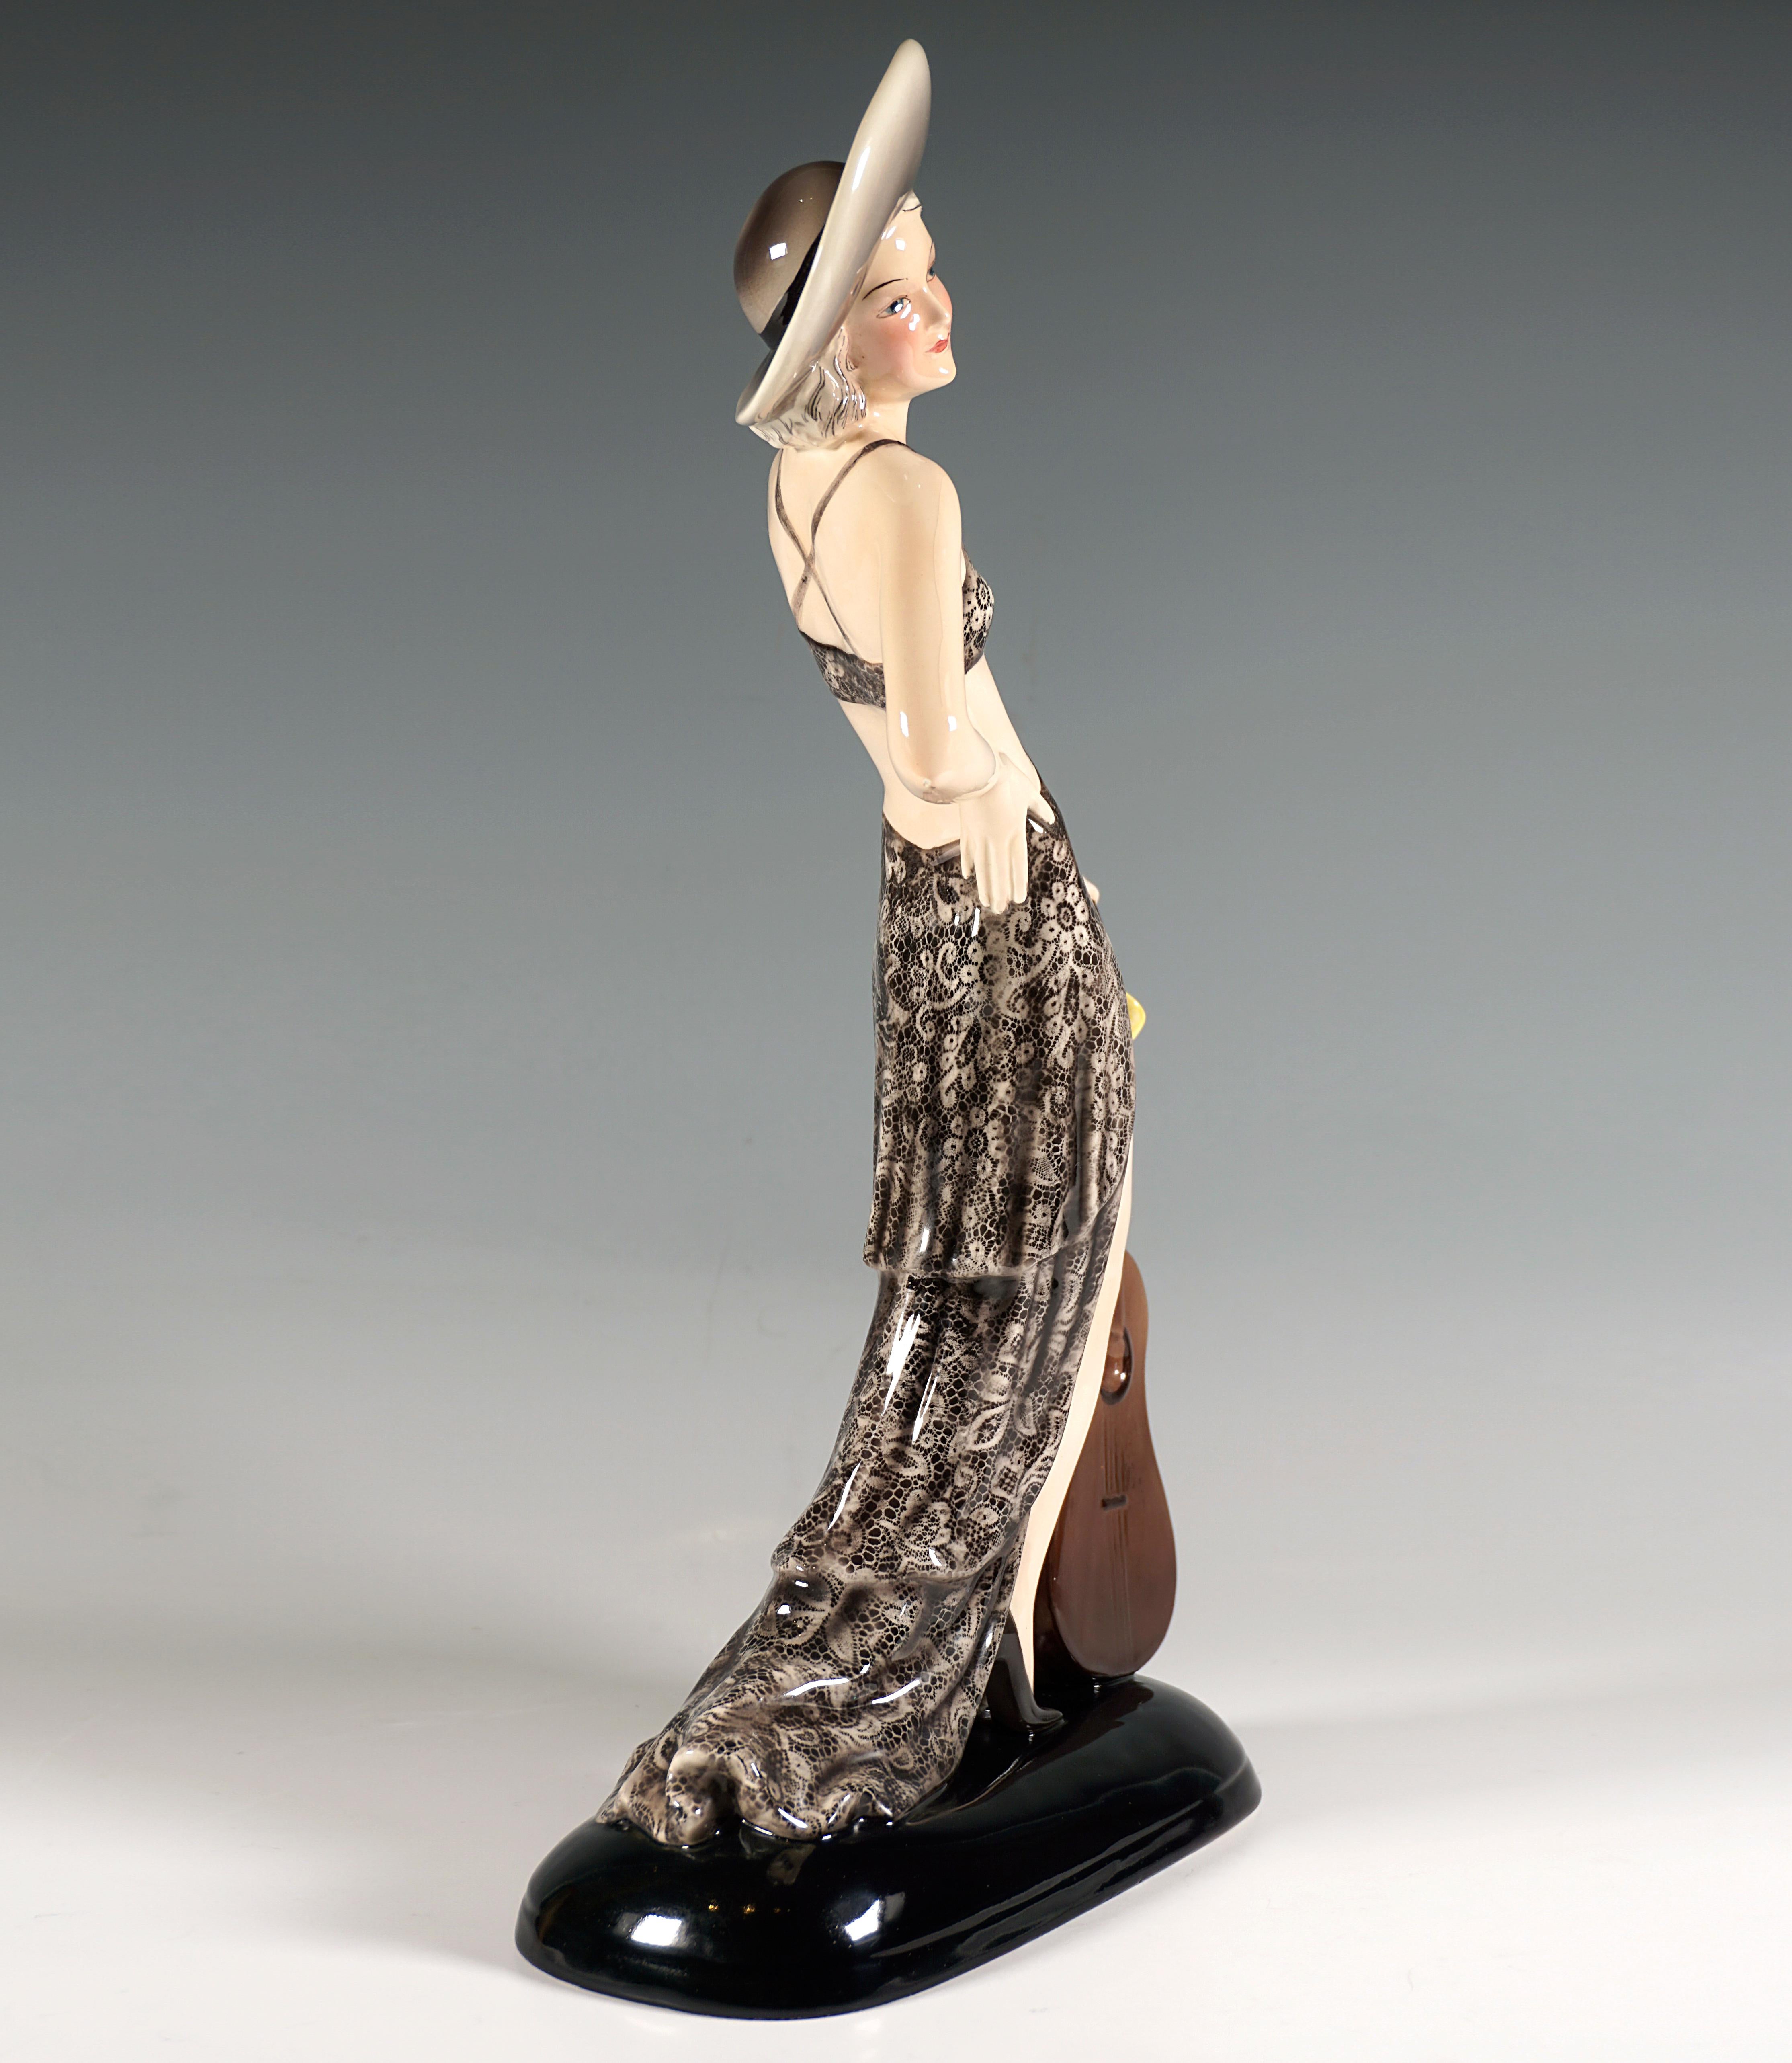 Seltene und exklusive Goldscheider Art Déco-Keramikfigur:
Posierende junge Dame in einem dunkelgrauen Spitzenkleid mit einem vorne am Rock befestigten Bustier, einen eleganten, breitkrempigen, hellen Hut auf den blonden Locken, nach rechts blickend